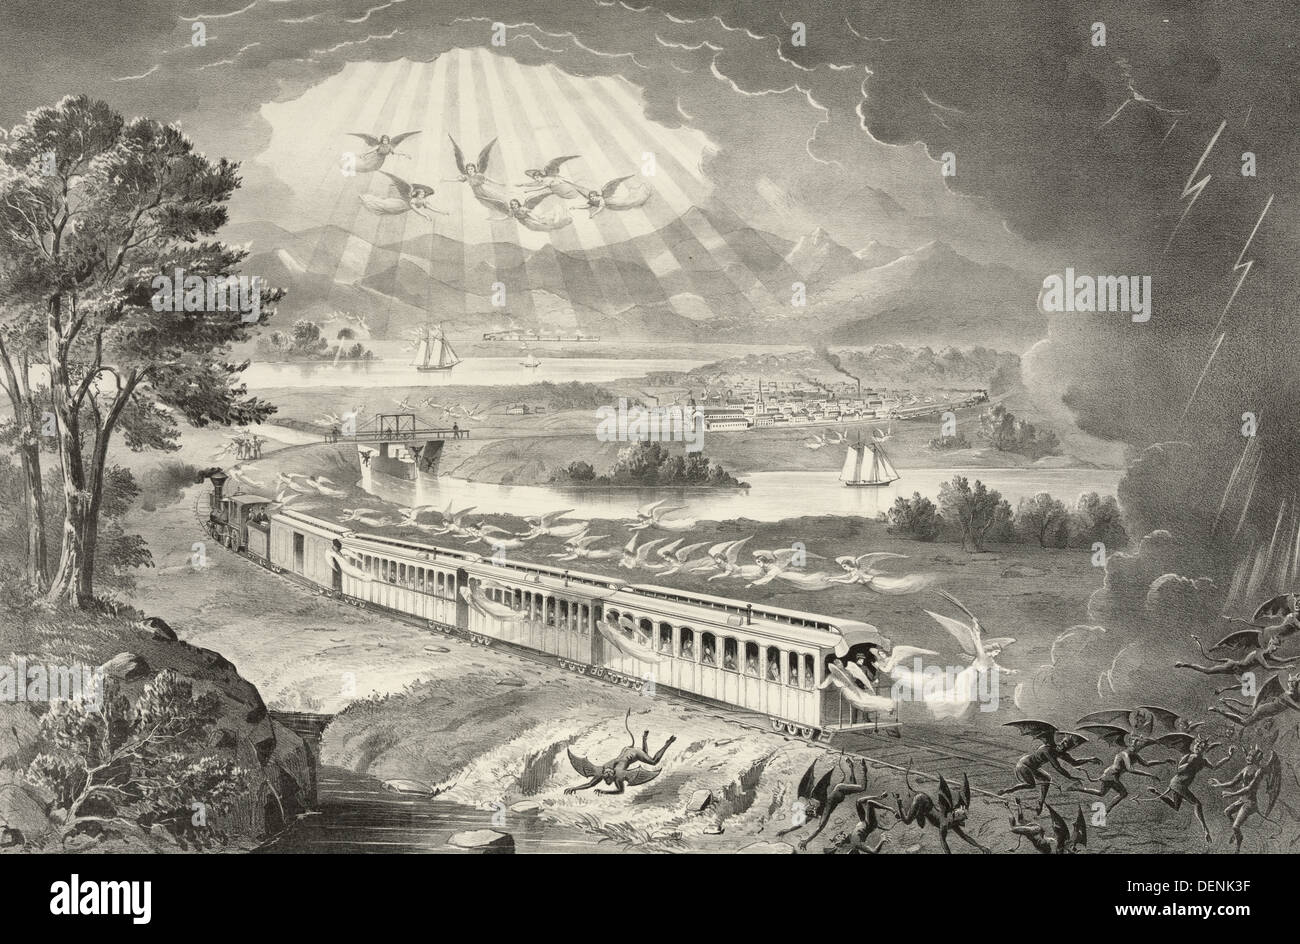 Schutz der Götter über sein Volk - erweitert Darstellung Gottes Schutz als Amerika nach Westen, 1876 Stockfoto